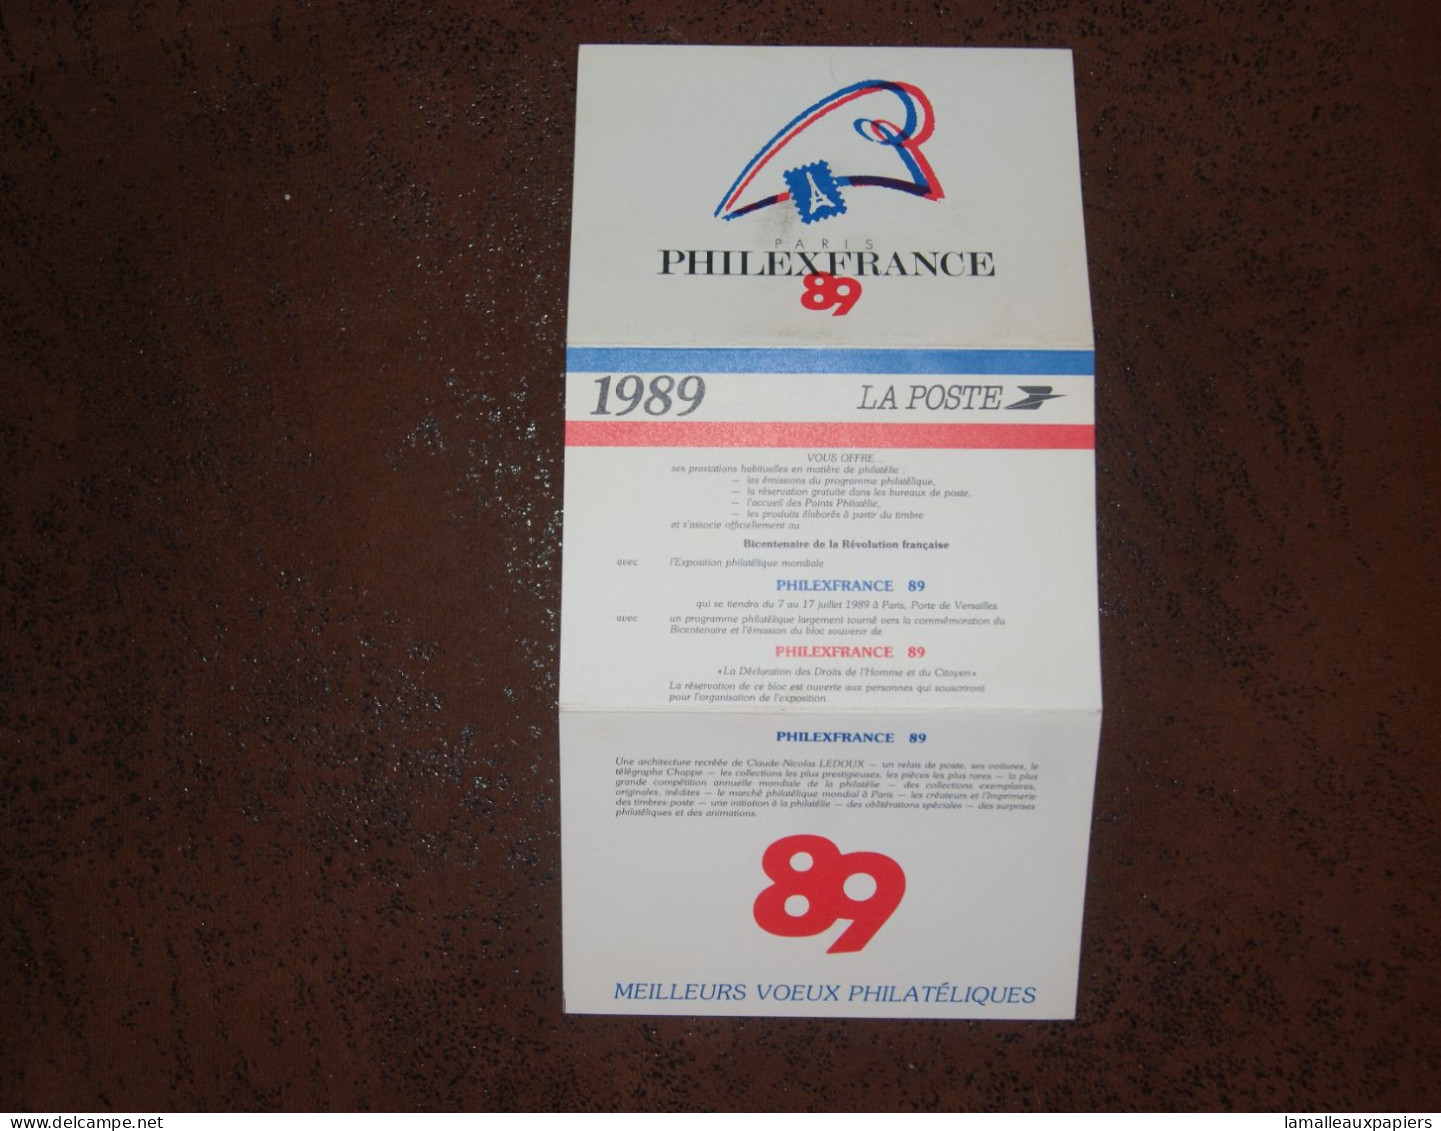 Calendrier La Poste Philexfrance 1989 - Cataloghi Di Case D'aste